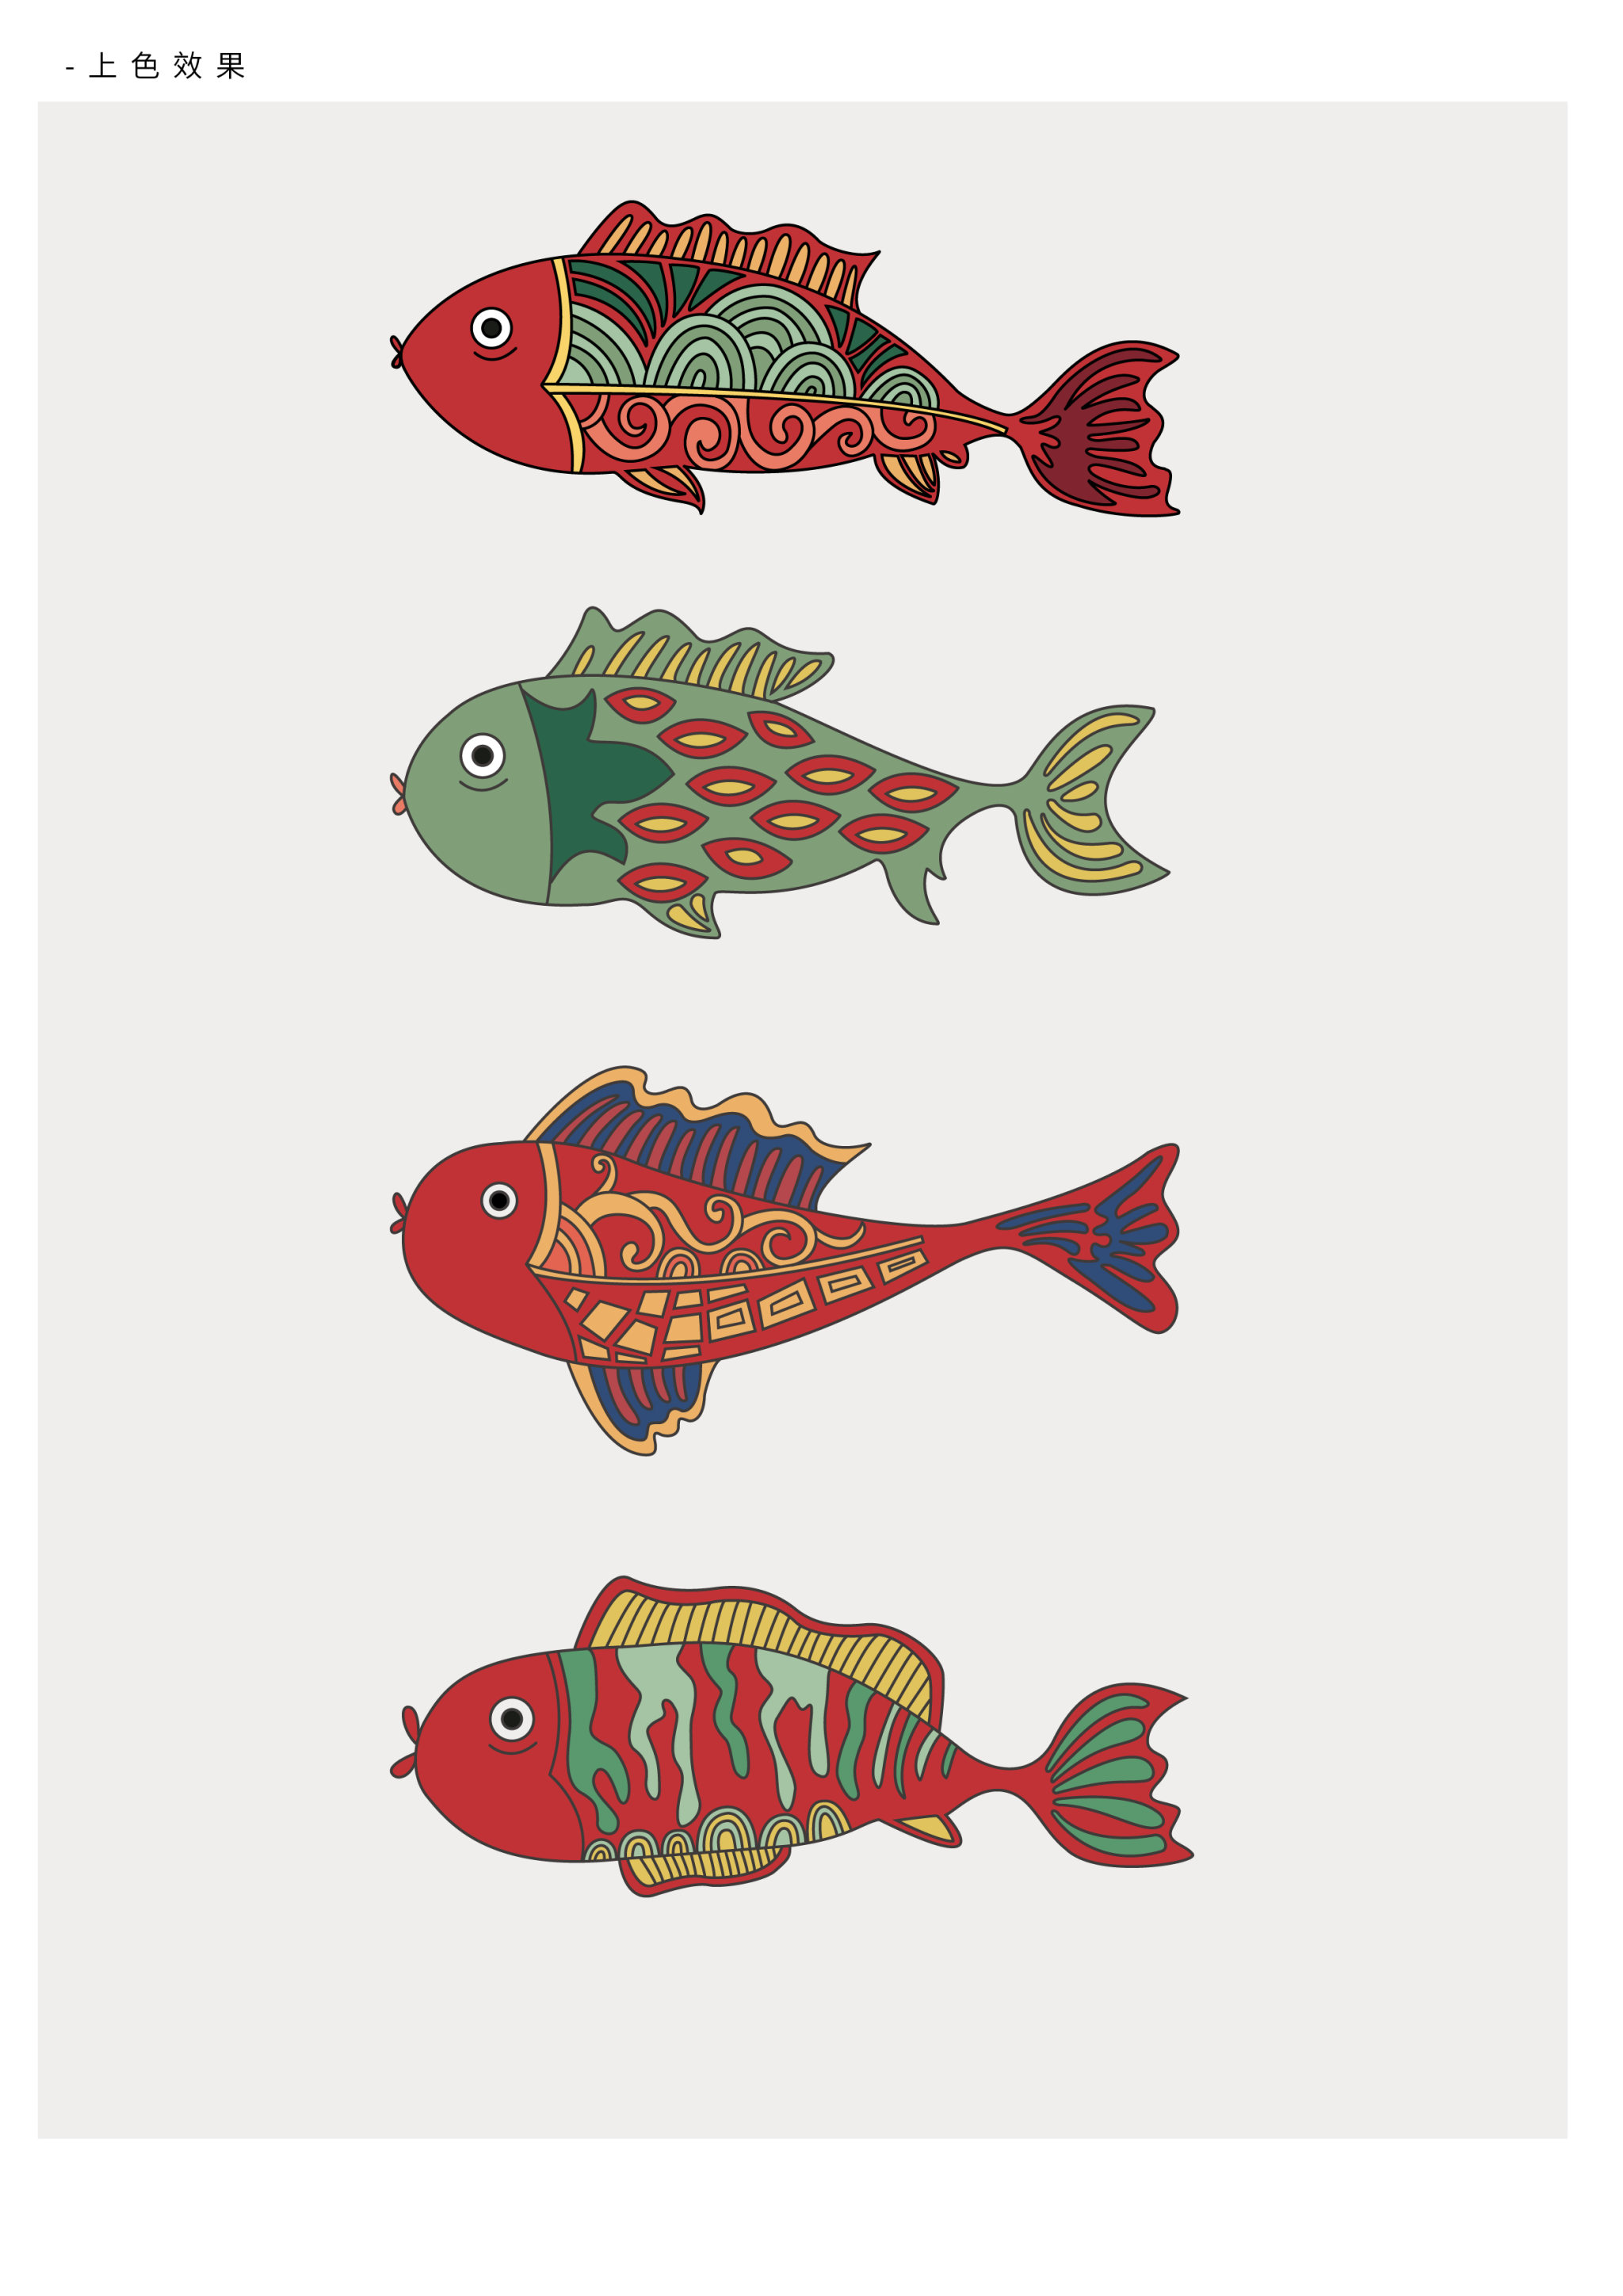 鱼的联想创意设计图片